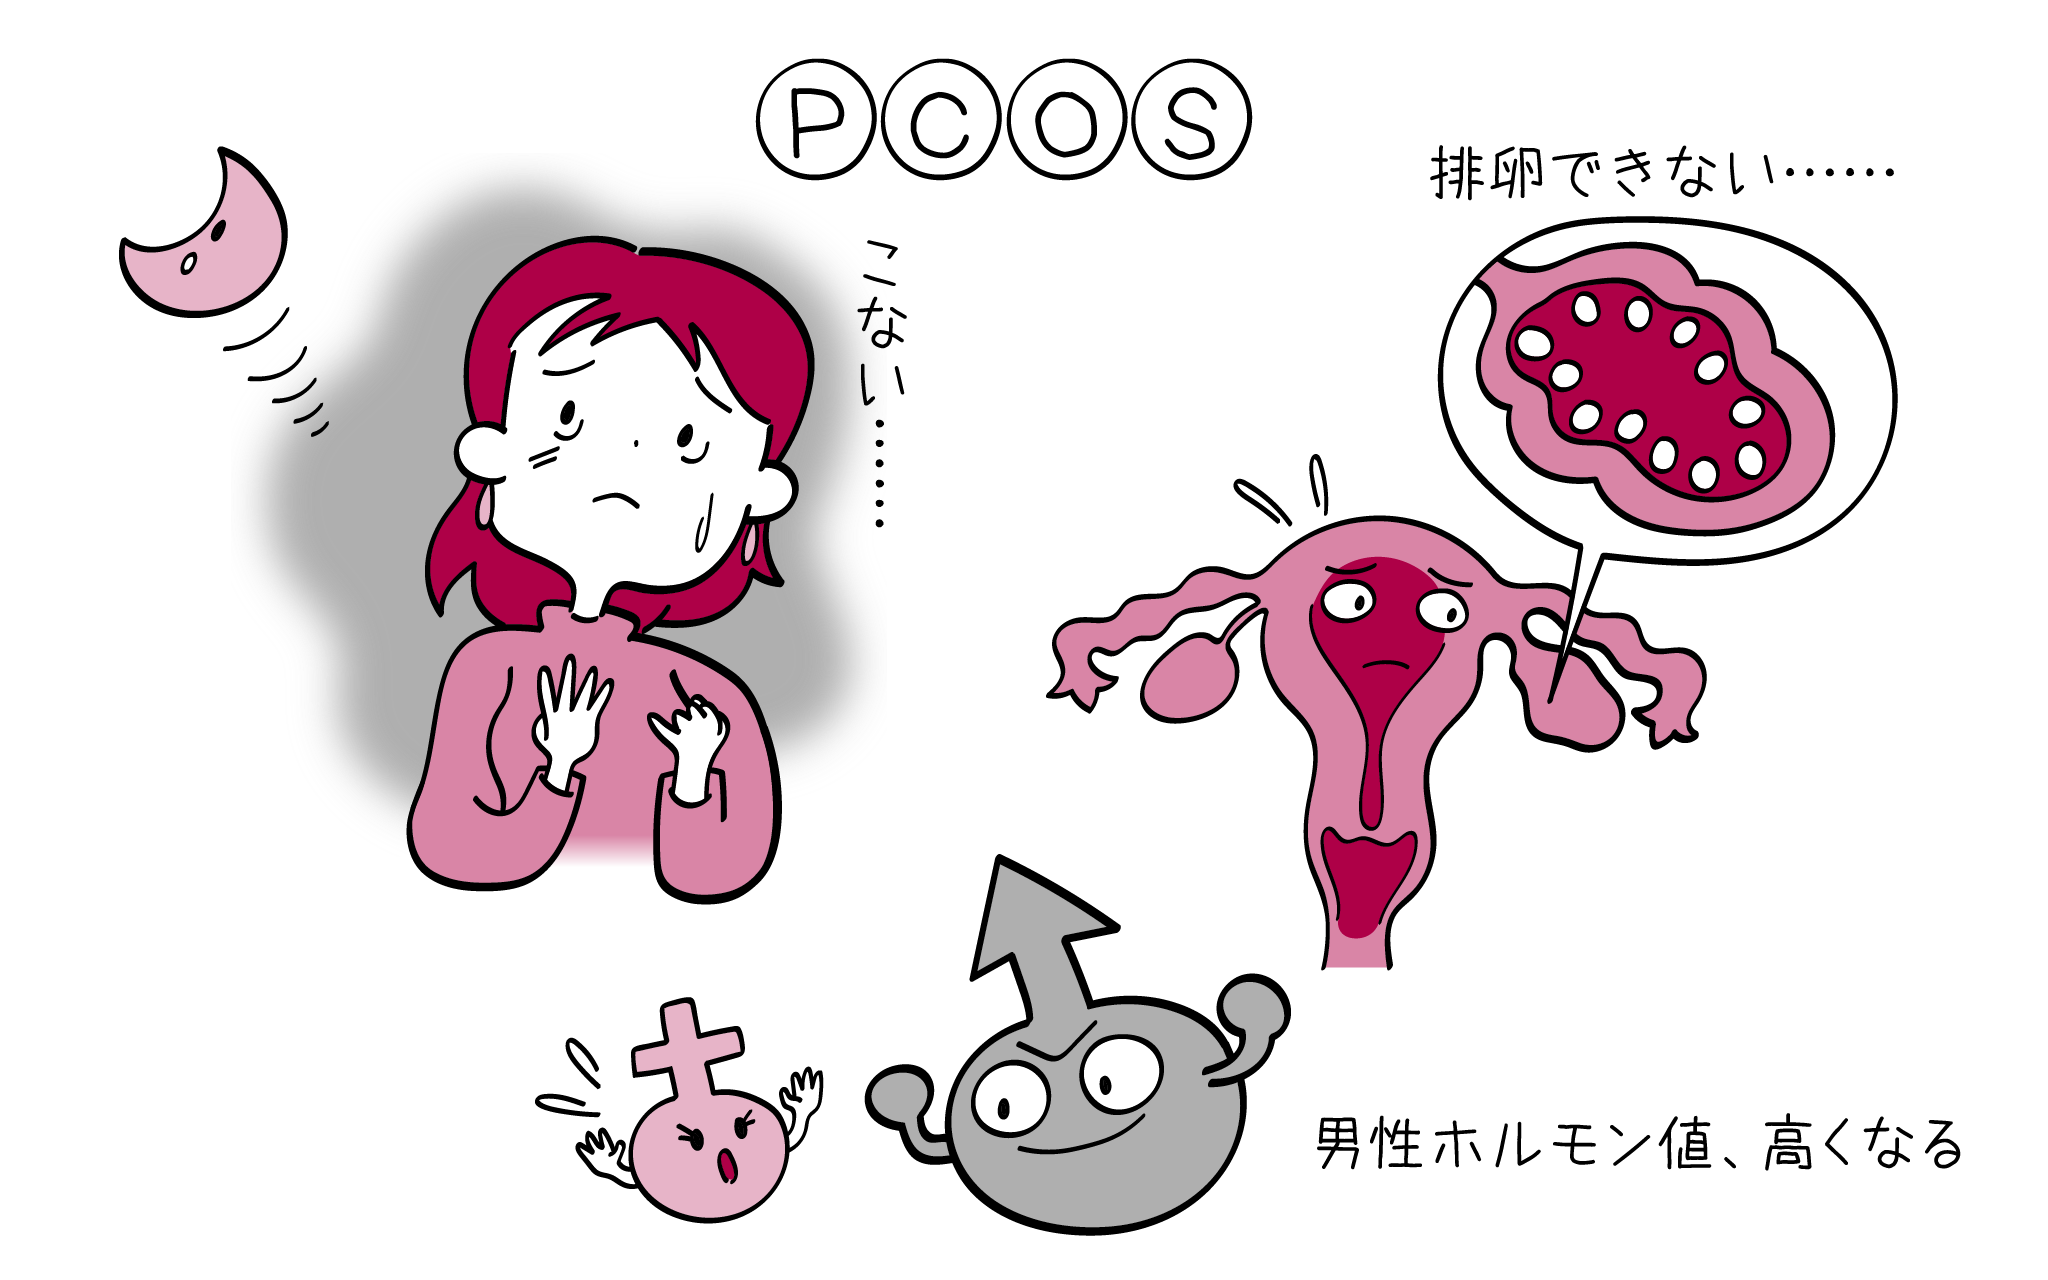 多嚢胞性卵巣症候群PCOSについて婦人科専門医が詳しく解説します。